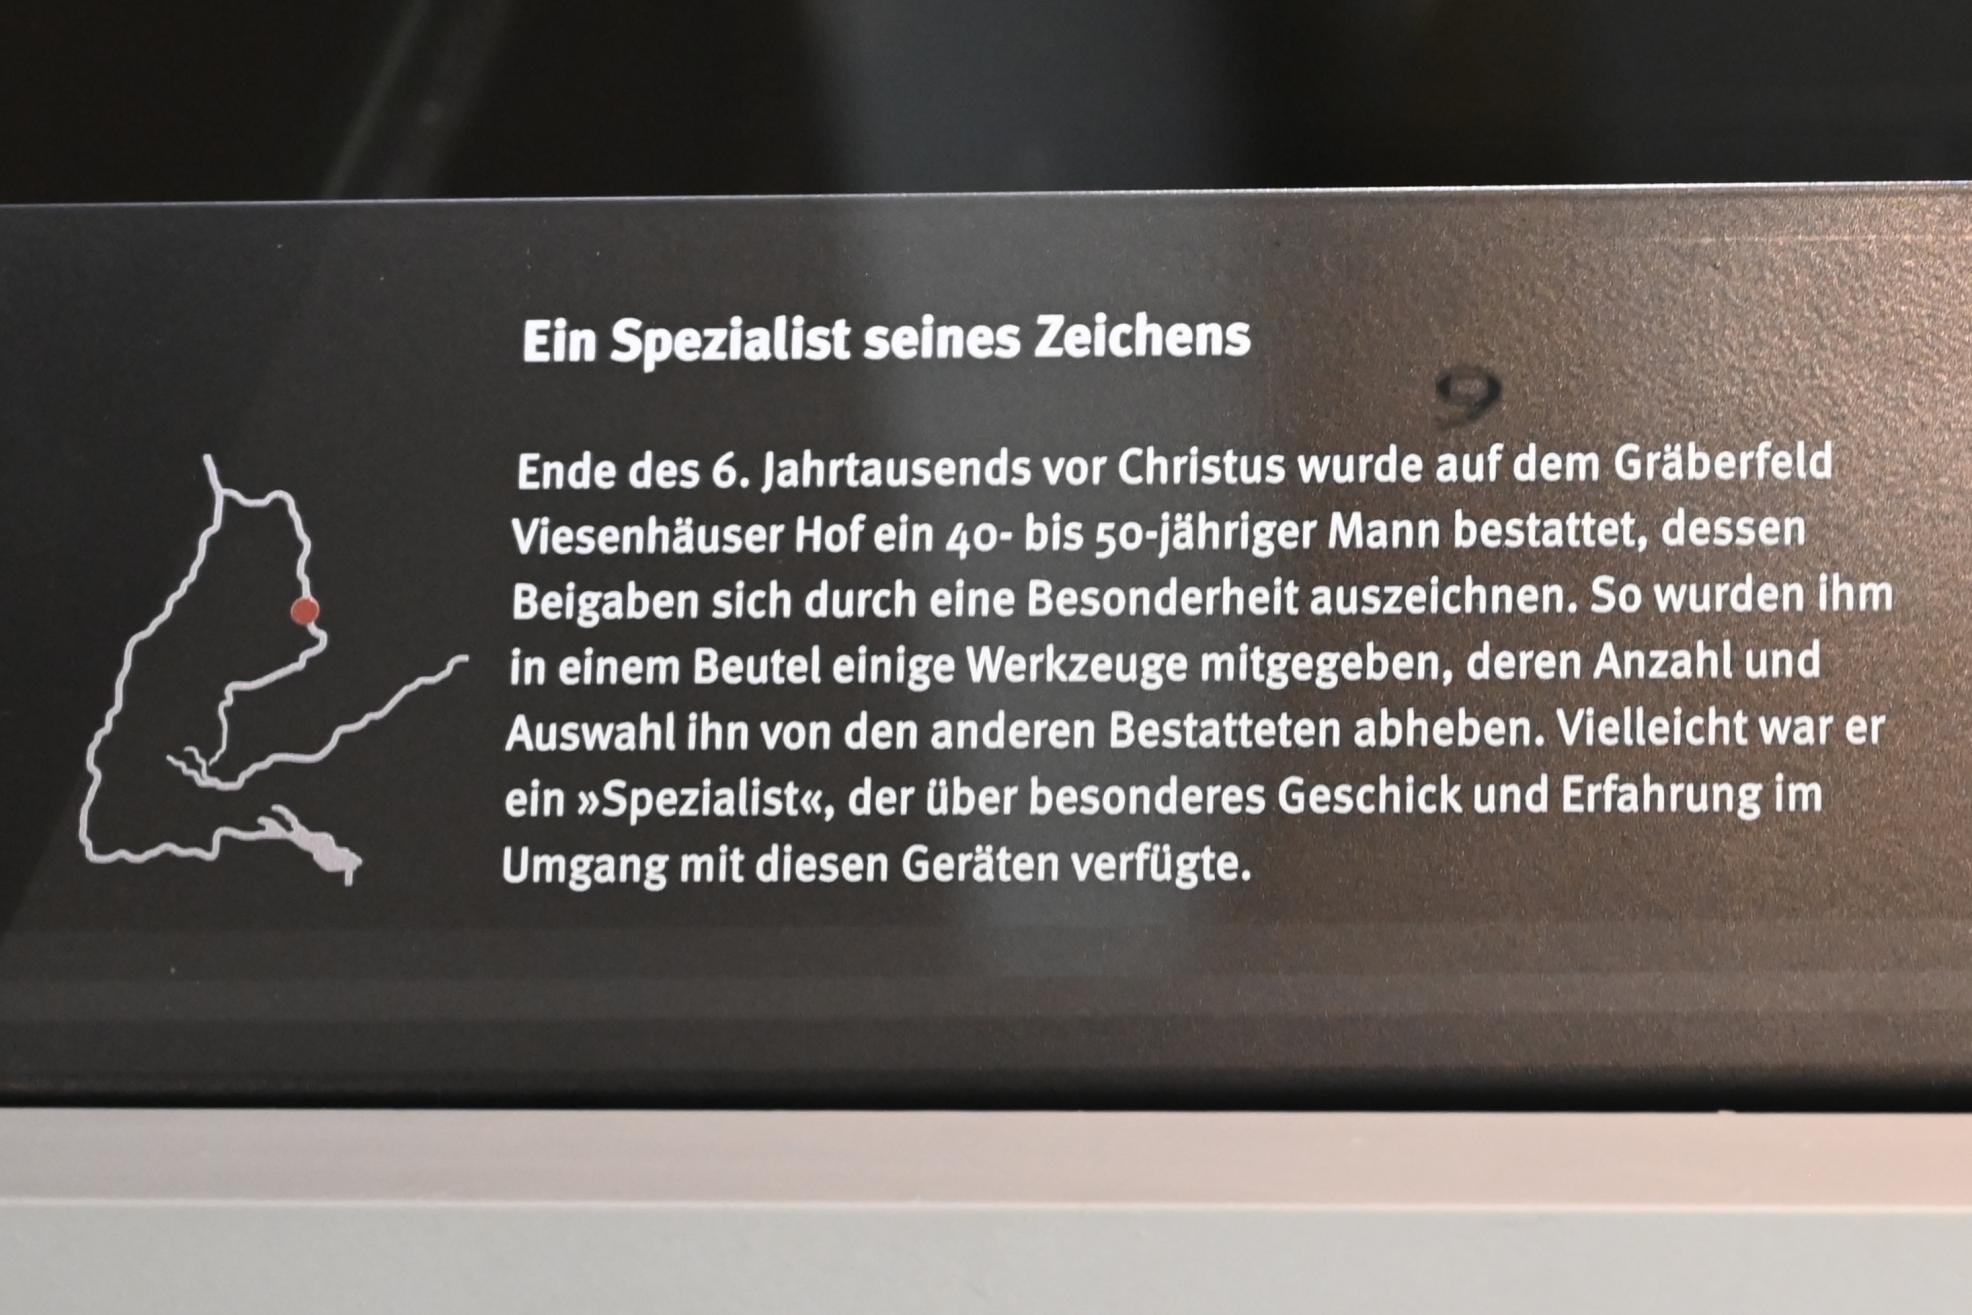 Querschneidige Pfeilspitze, Neolithikum (Jungsteinzeit), 5500 - 1700 v. Chr., 5200 - 5000 v. Chr., Bild 3/3